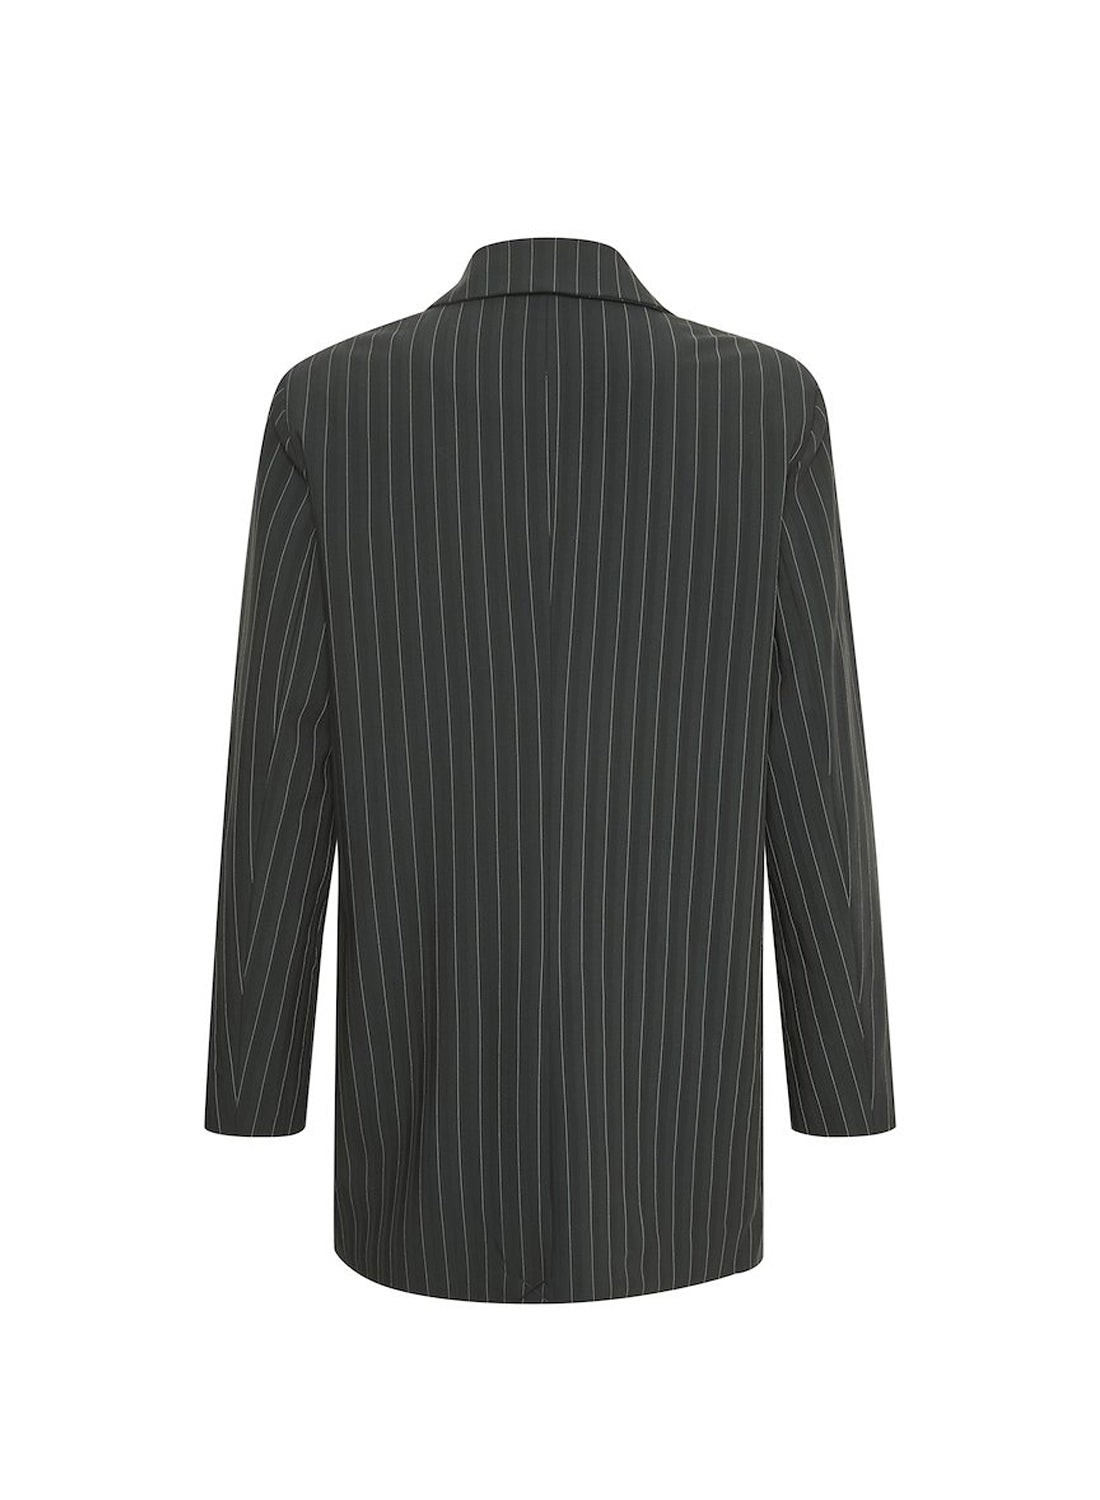 My Essential Wardrobe NajaMW Blazer Black Striped